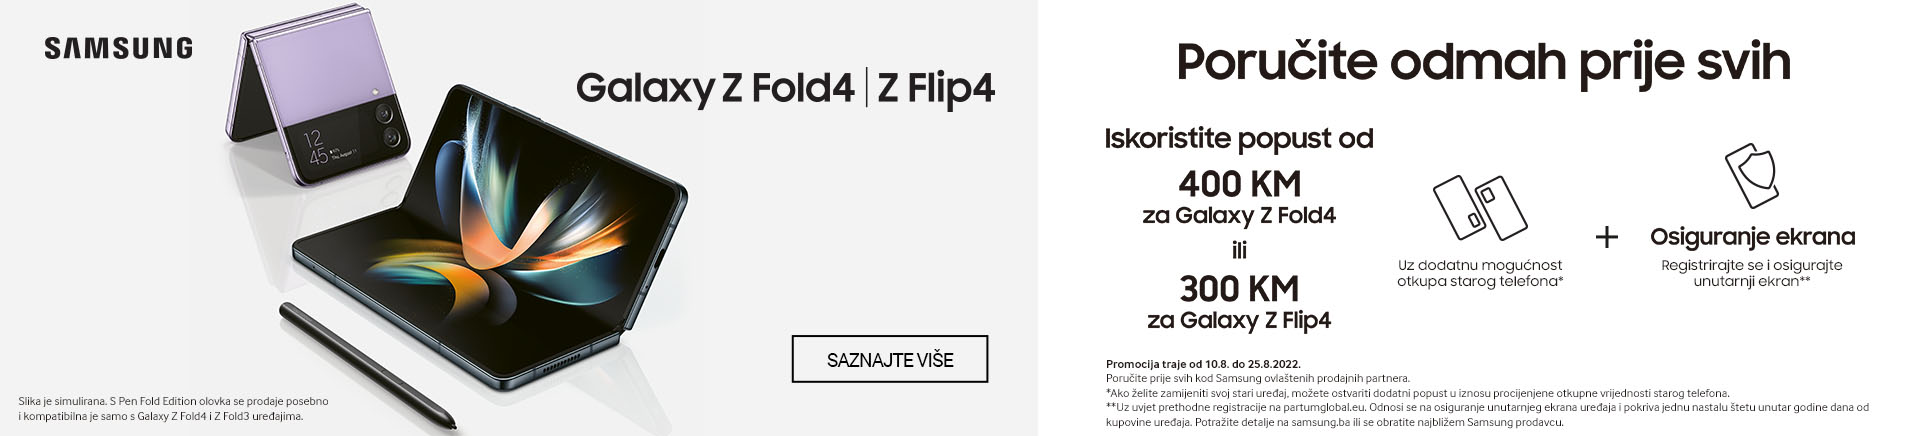 Samsung Galaxy Z Fold4 i Z Flip 4